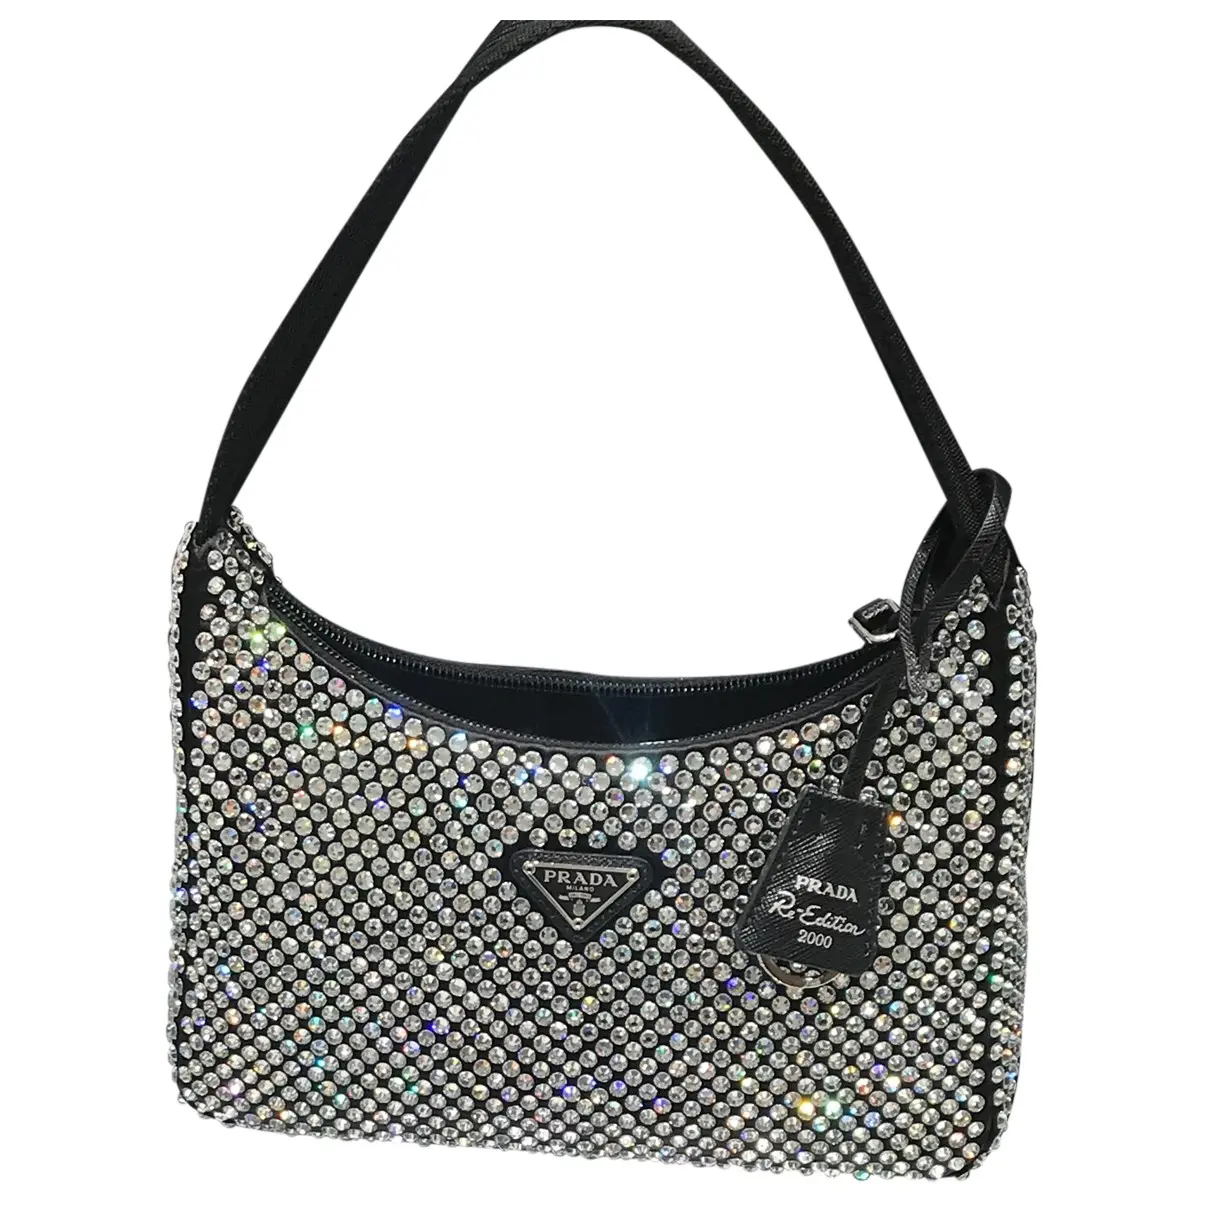 Cleo glitter handbag Prada